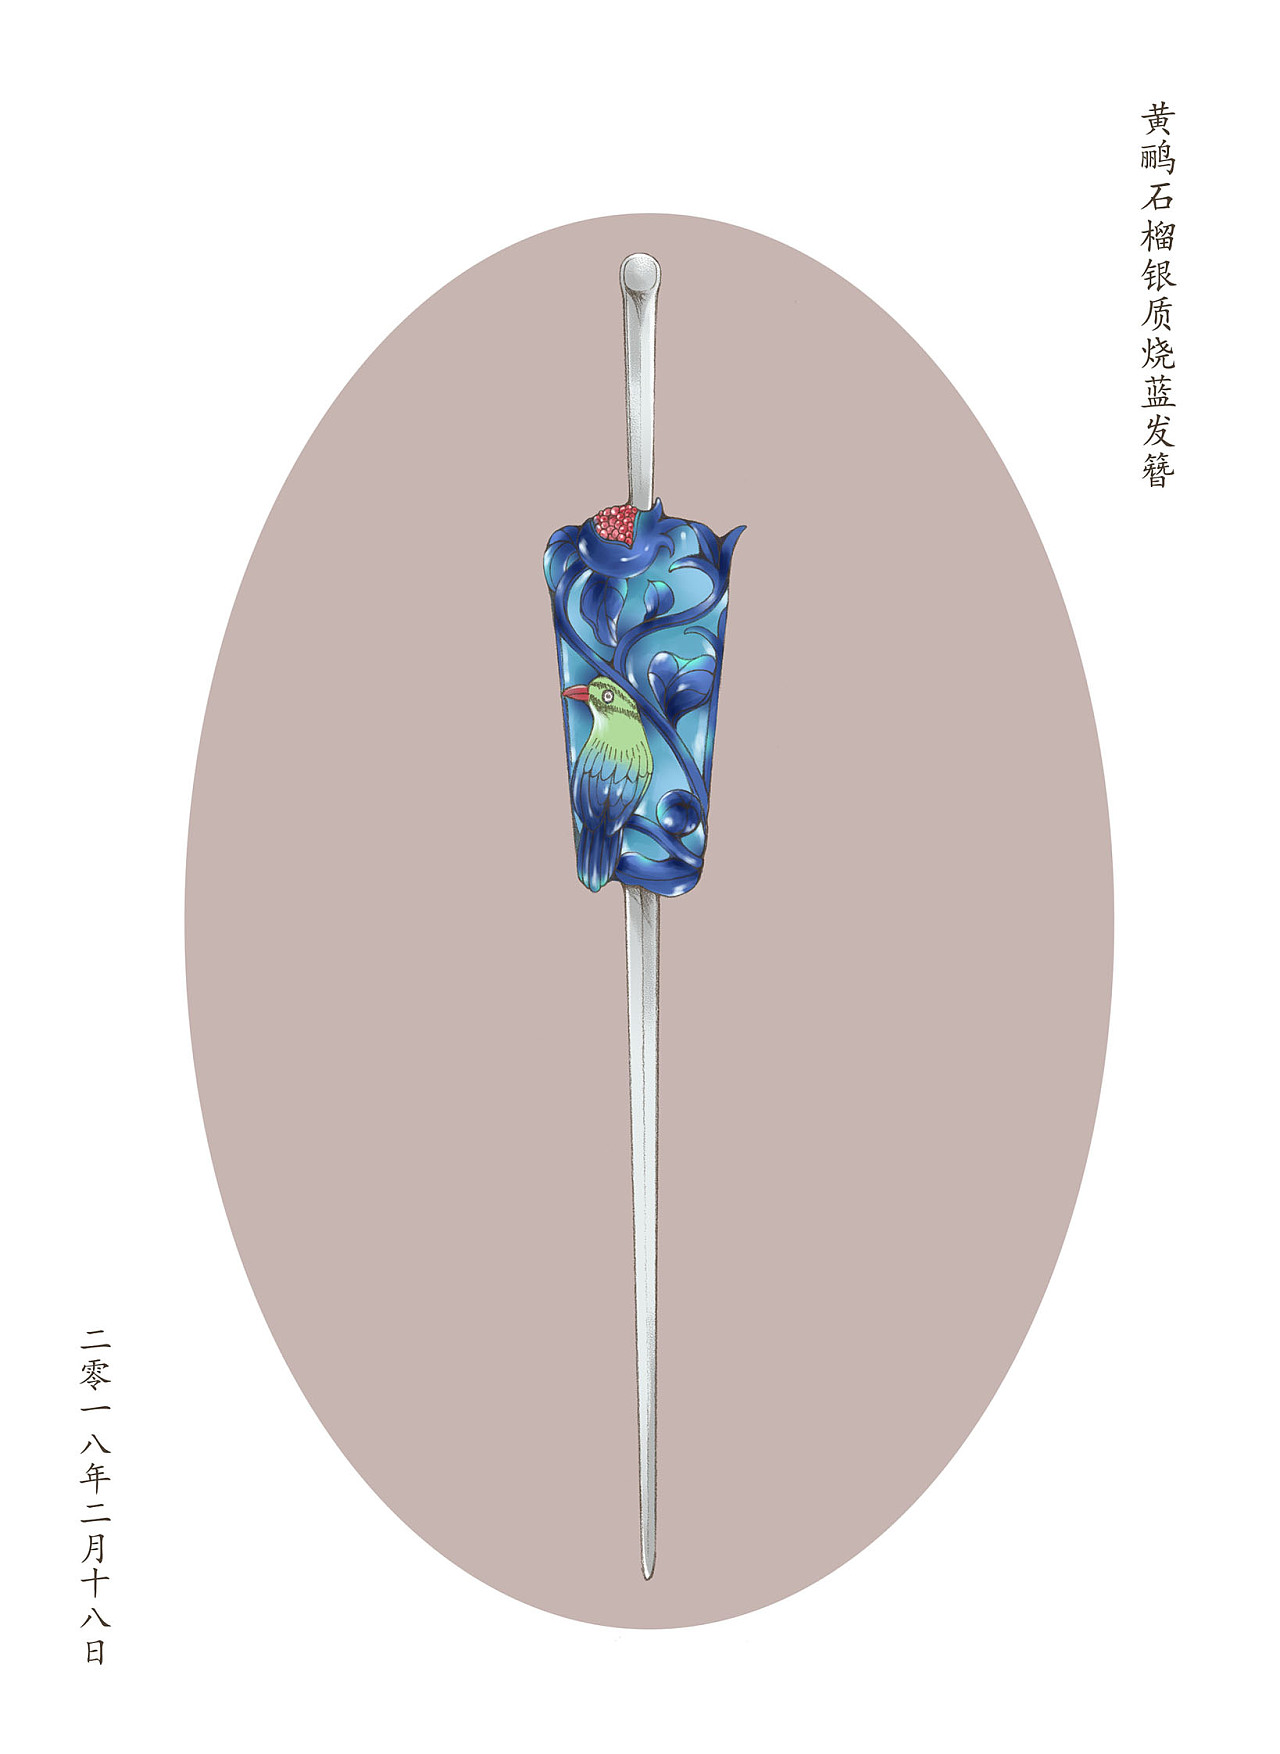 多子多寿、花卉纹点翠钗 清-中国民间工艺-图片